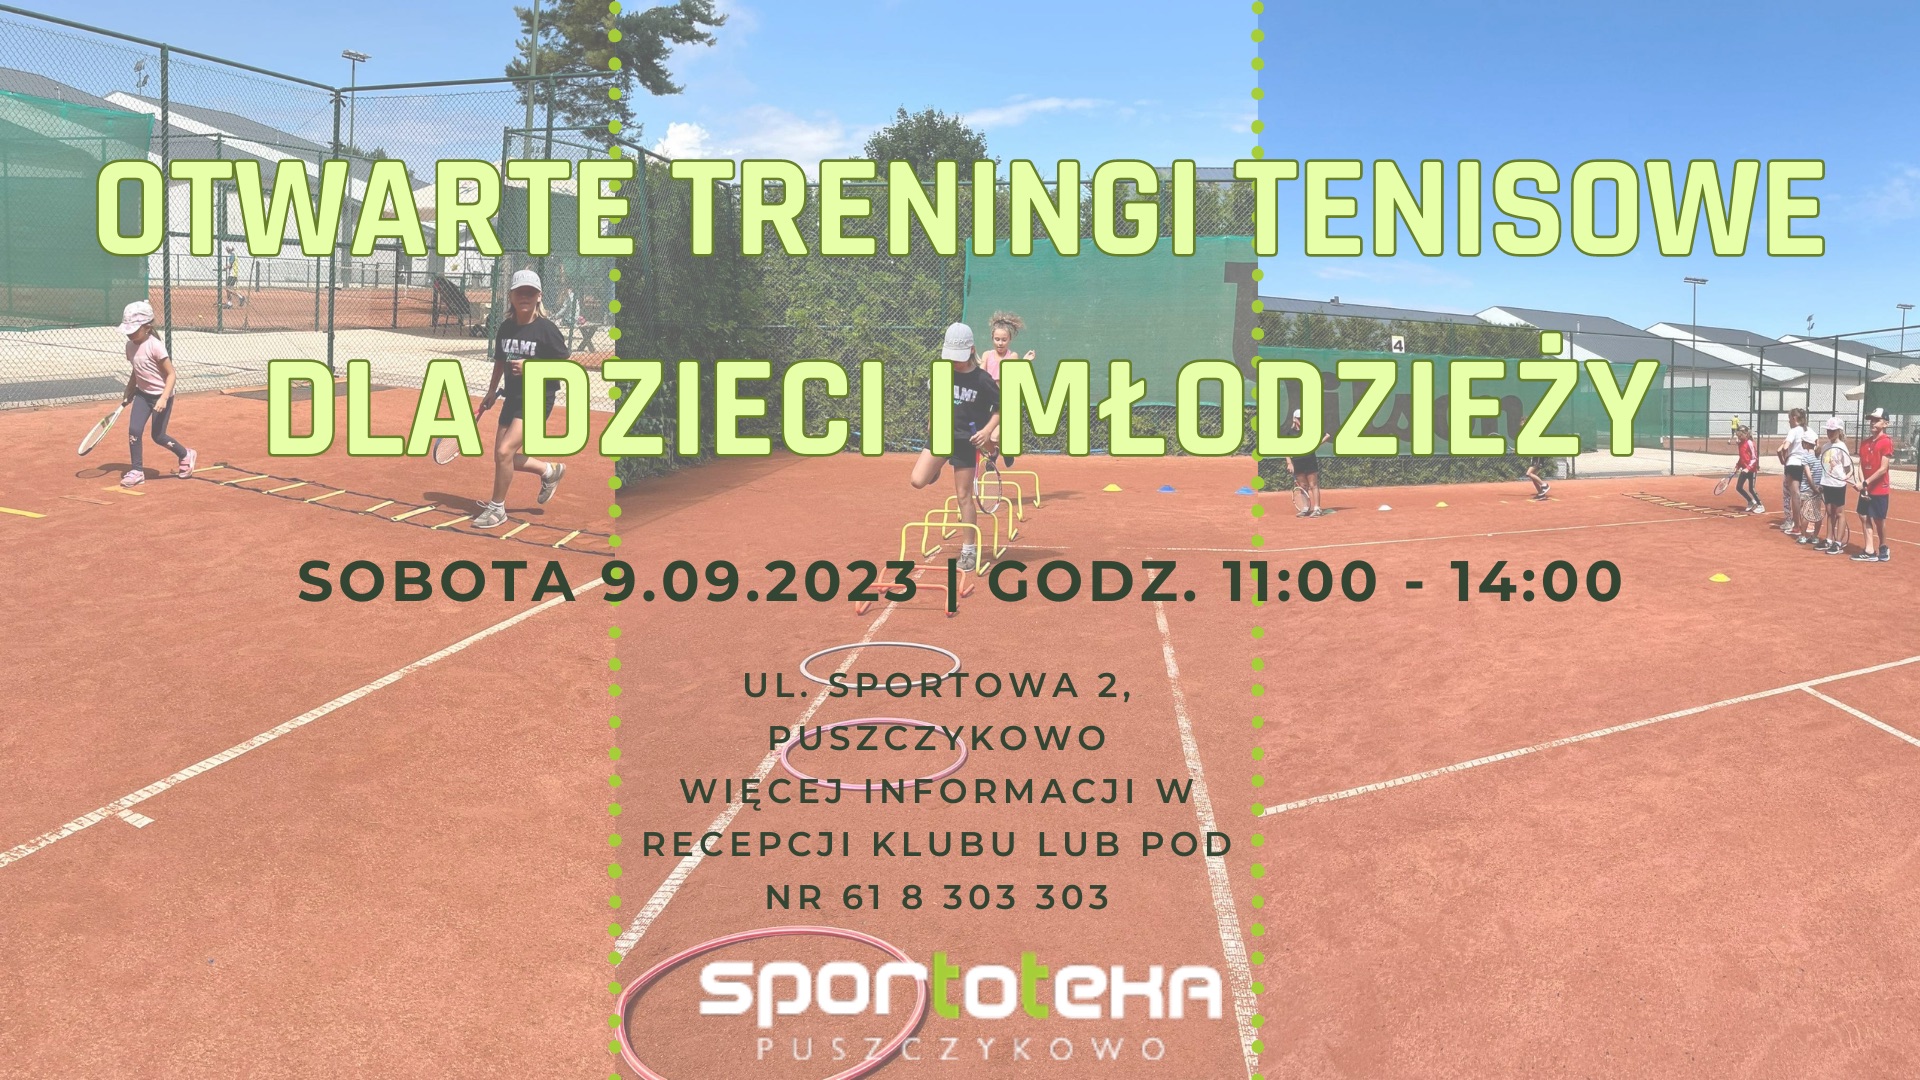 Sportoteka Puszczykowo zaprasza na otwarte treningi tenisowe dla dzieci i młodzieży.